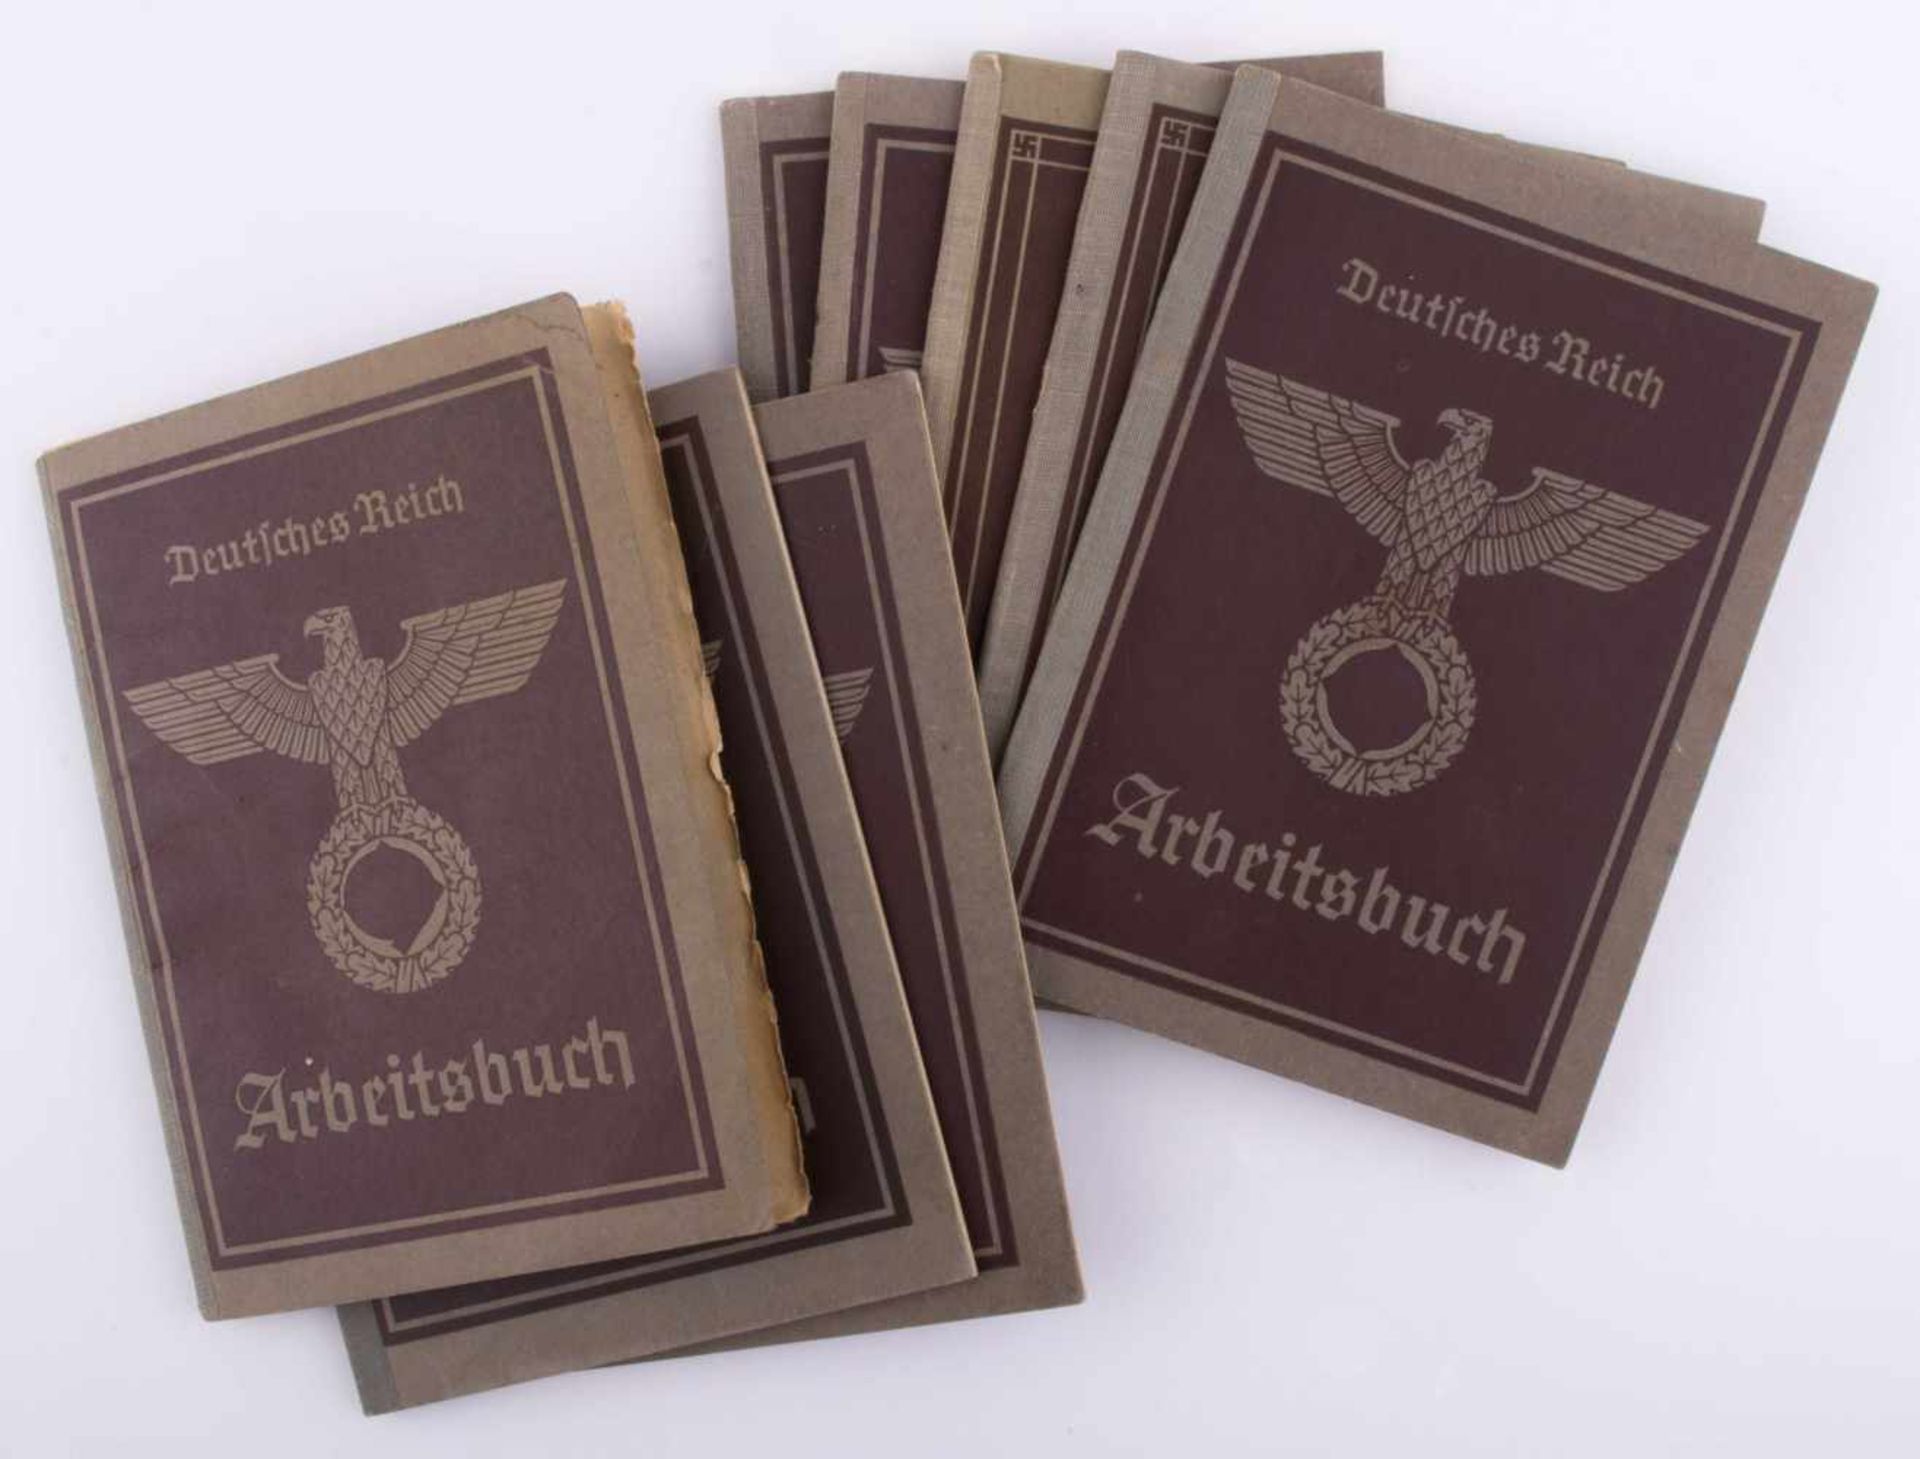 Konvolut Arbeitsbücher Deutsches Reich 1935 8 Stück, alle gut erhalten